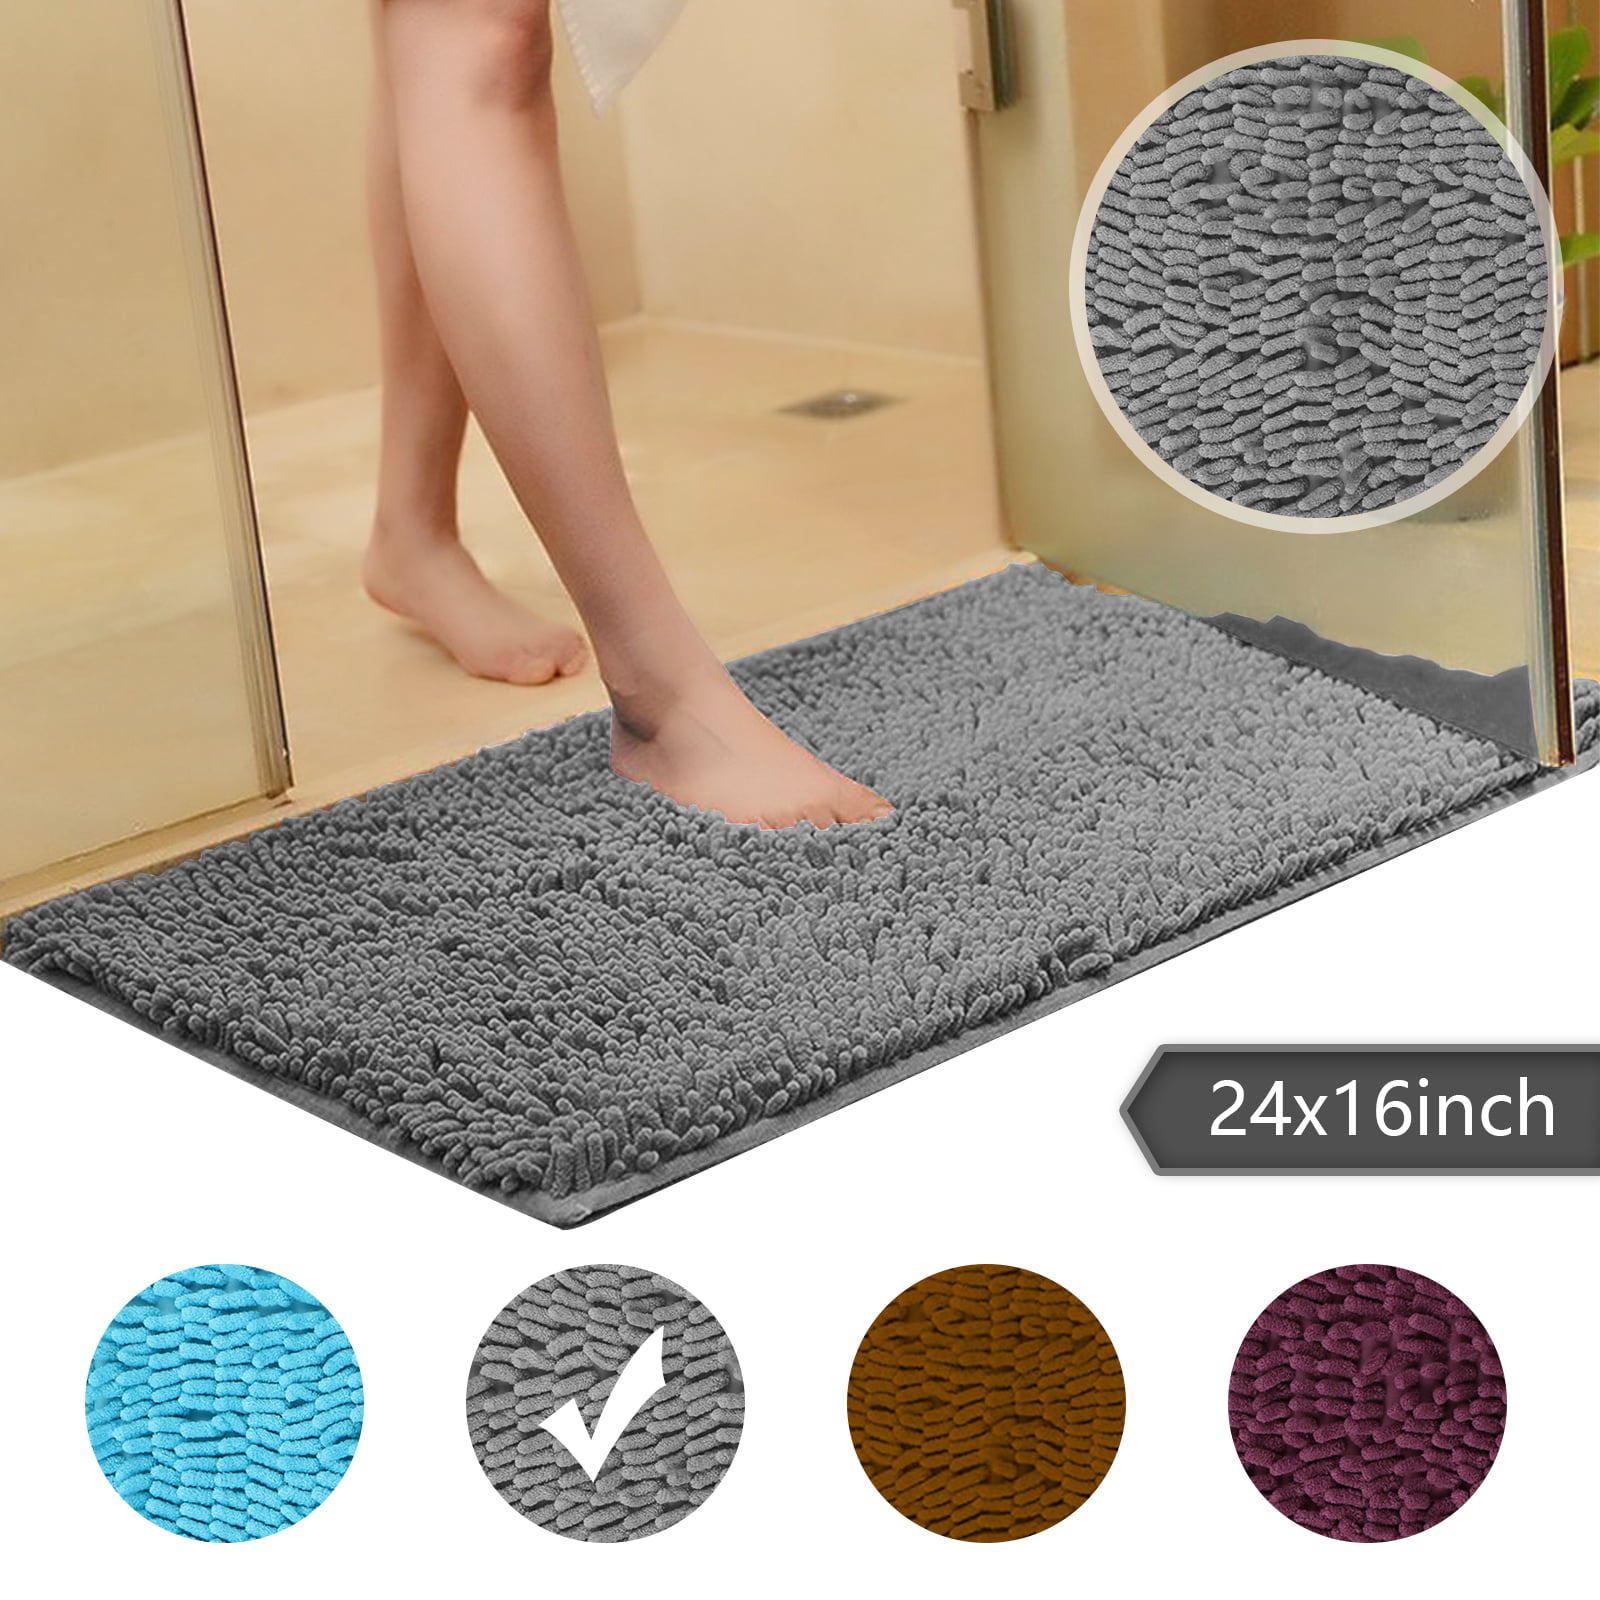 60 X 40cm Non Slip Bath Mats Cotton Pile Soft & Absorbent Washable Carpet 